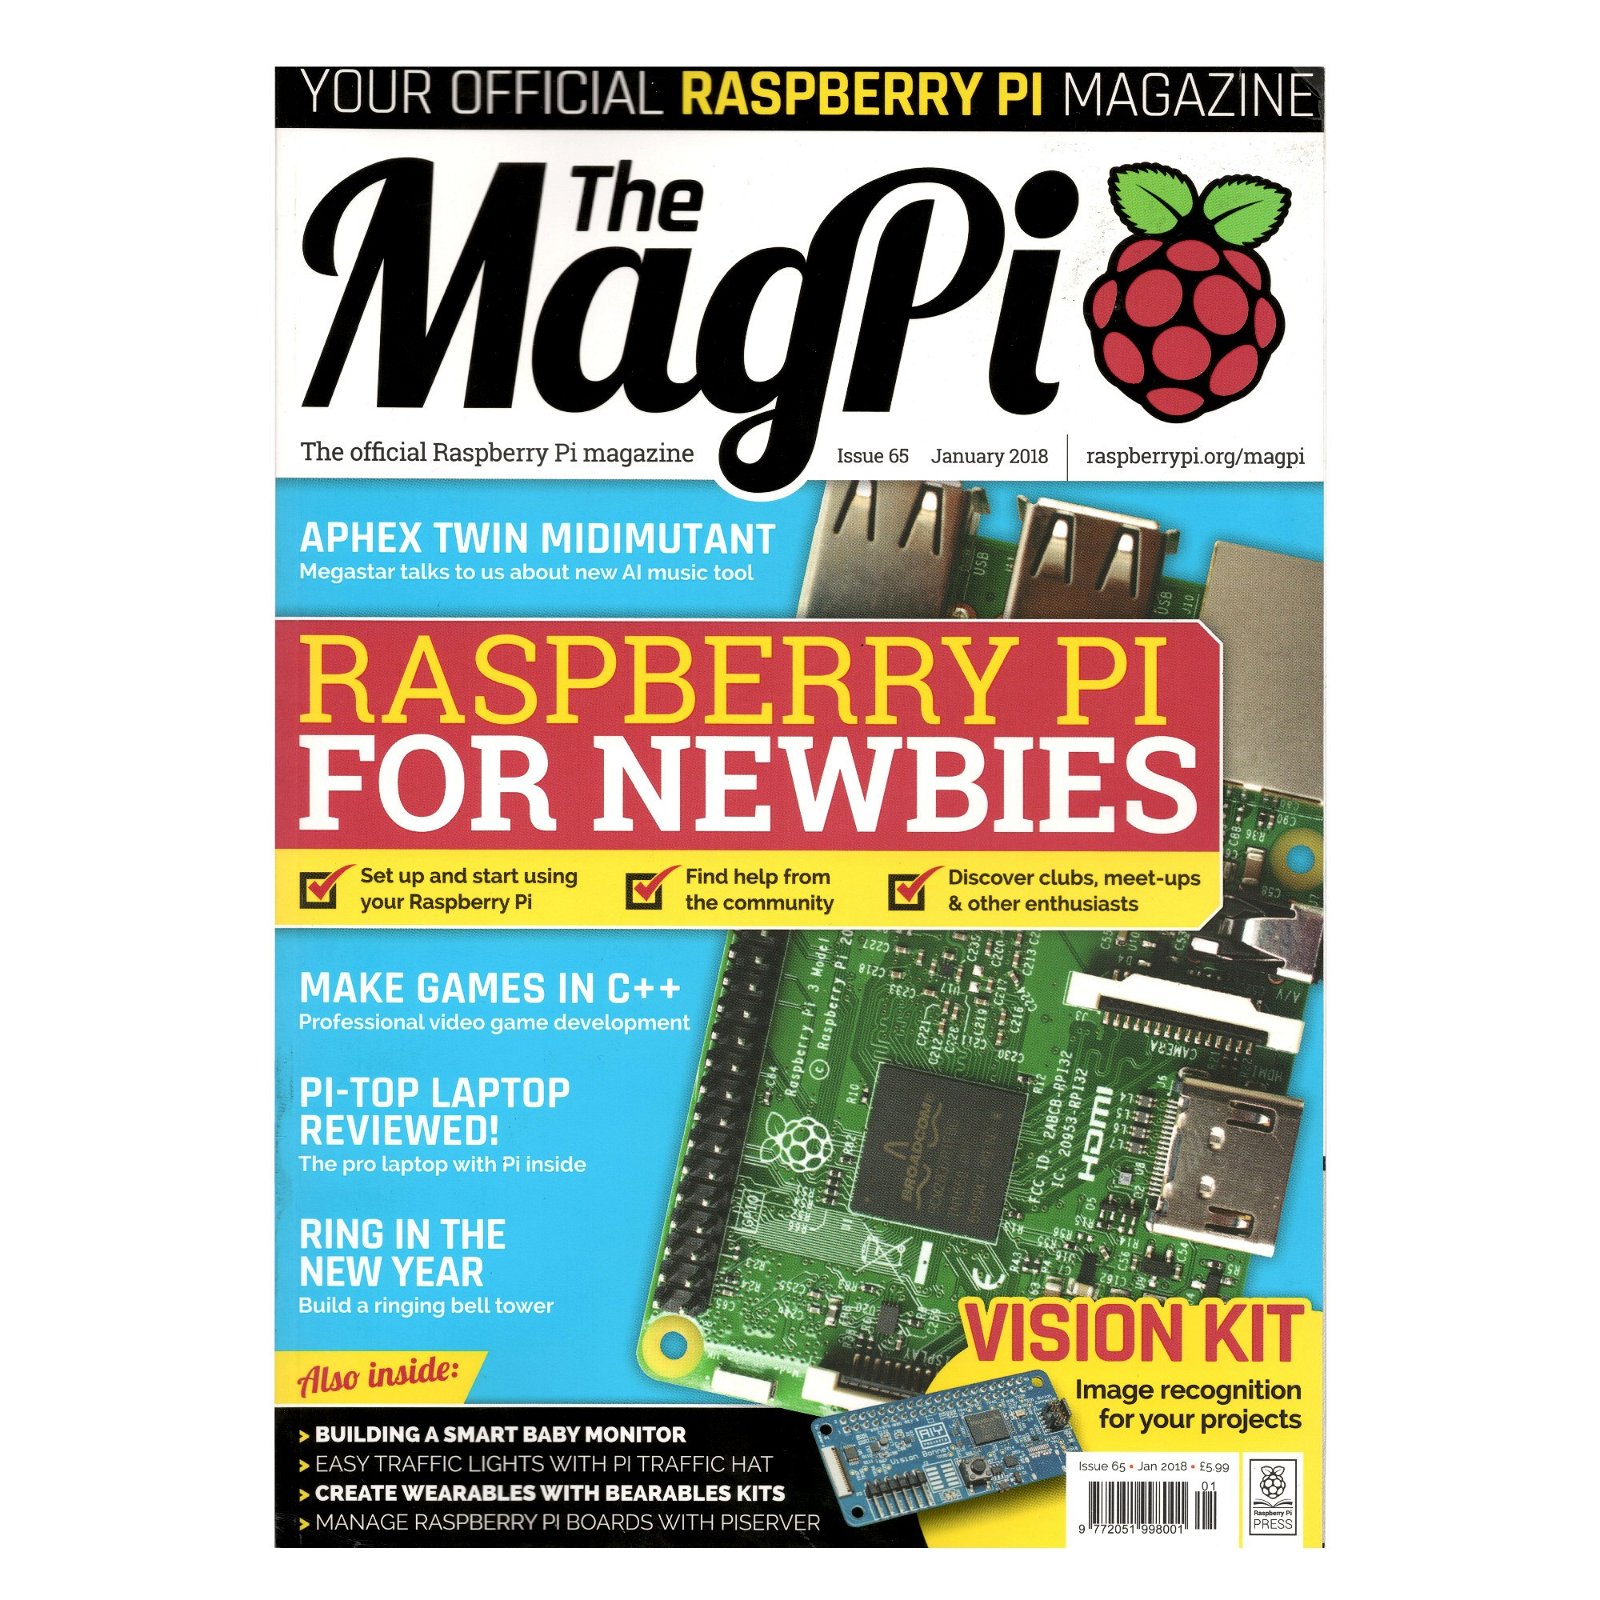 MagPi - oficiální časopis RaspberryPi - číslo 01/2018, vydání 65